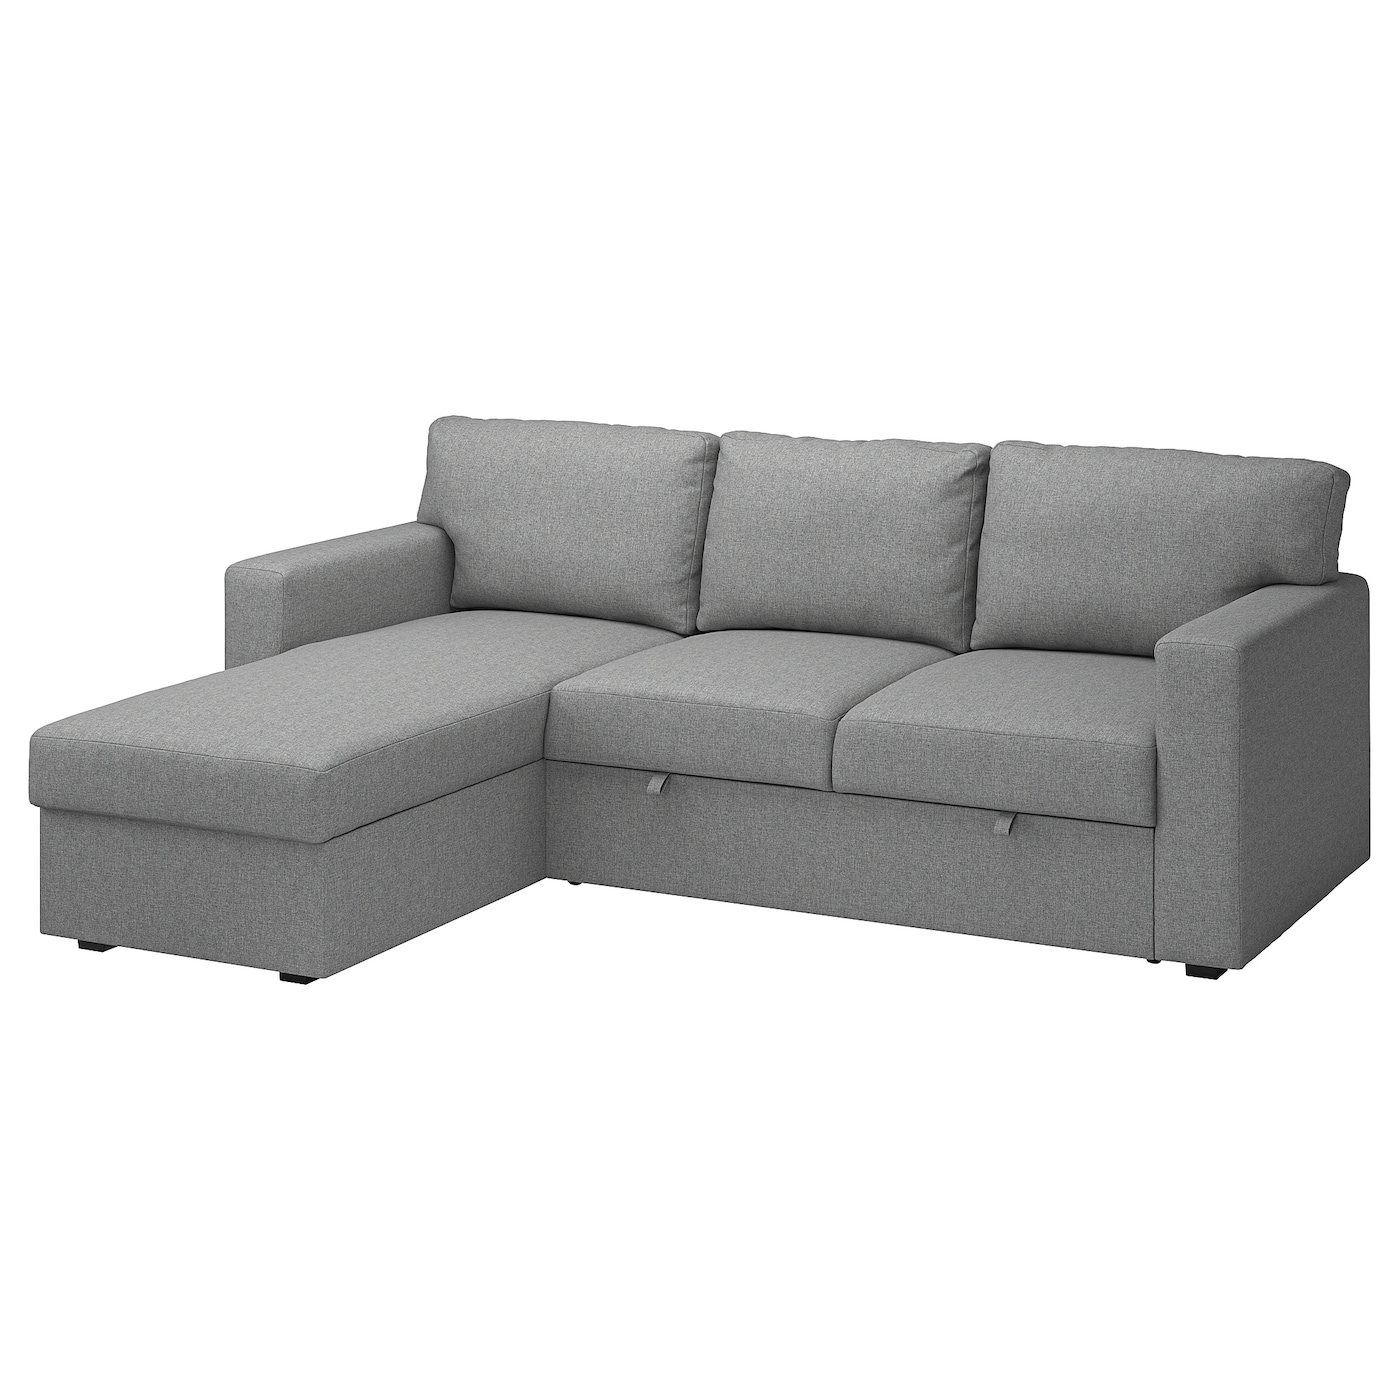 БОРСЛОВ 3-местный диван-кровать + диван, Тибблби бежевый/серый BÅRSLÖV IKEA кровать диван ру весмар 180 velvet terra